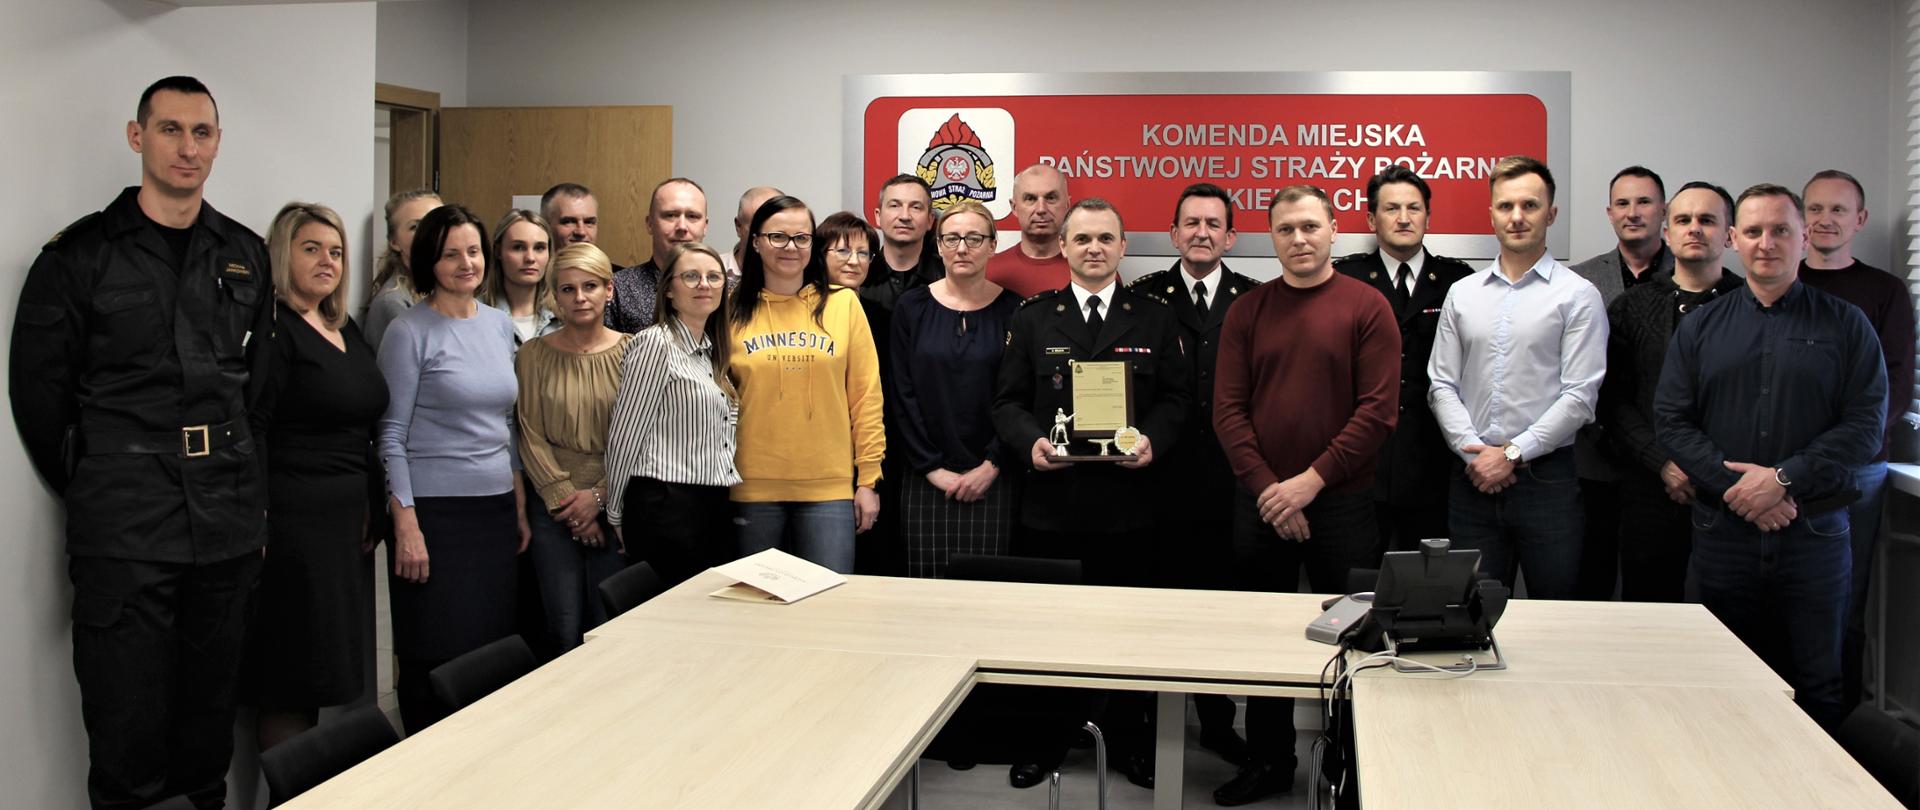 Na zdjęciu przedstawiono zgromadzonych współpracowników odchodzącego naczelnika Wydziału Organizacyjno-Kadrowego z komendy miejskiej Państwowej Straży Pożarnej w Kielcach.